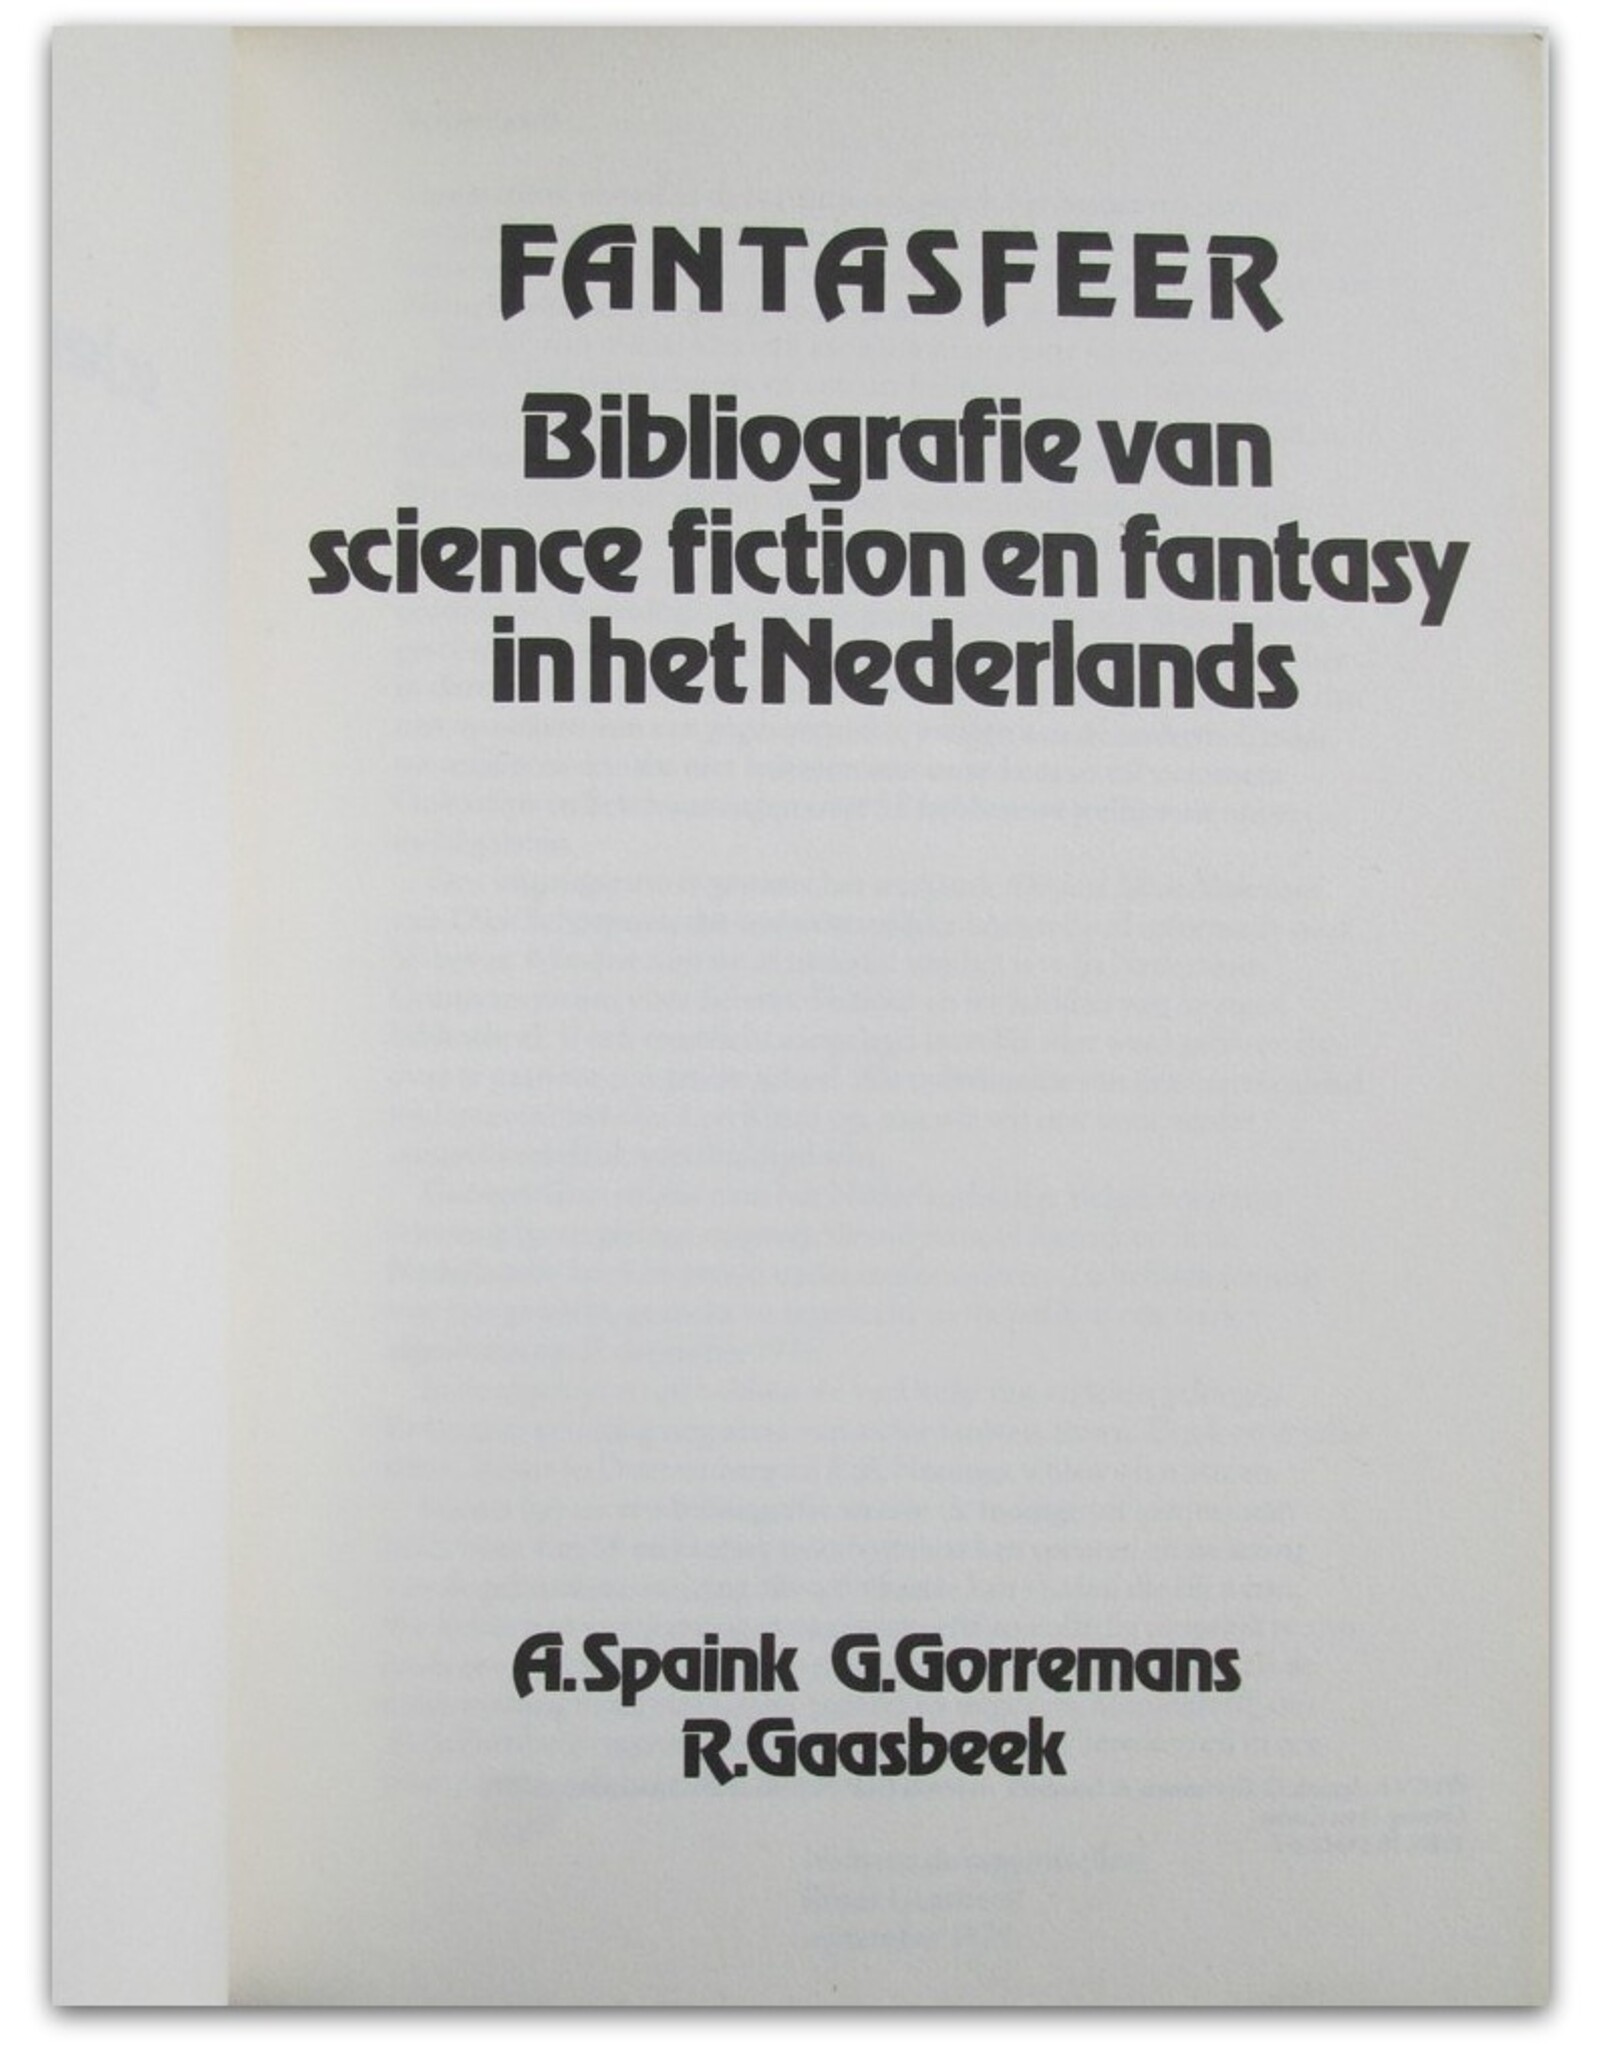 A. Spaink, G. Gorremans & R. Gaasbeek - Fantasfeer. Bibliografie van science fiction en fantasy in het Nederlands